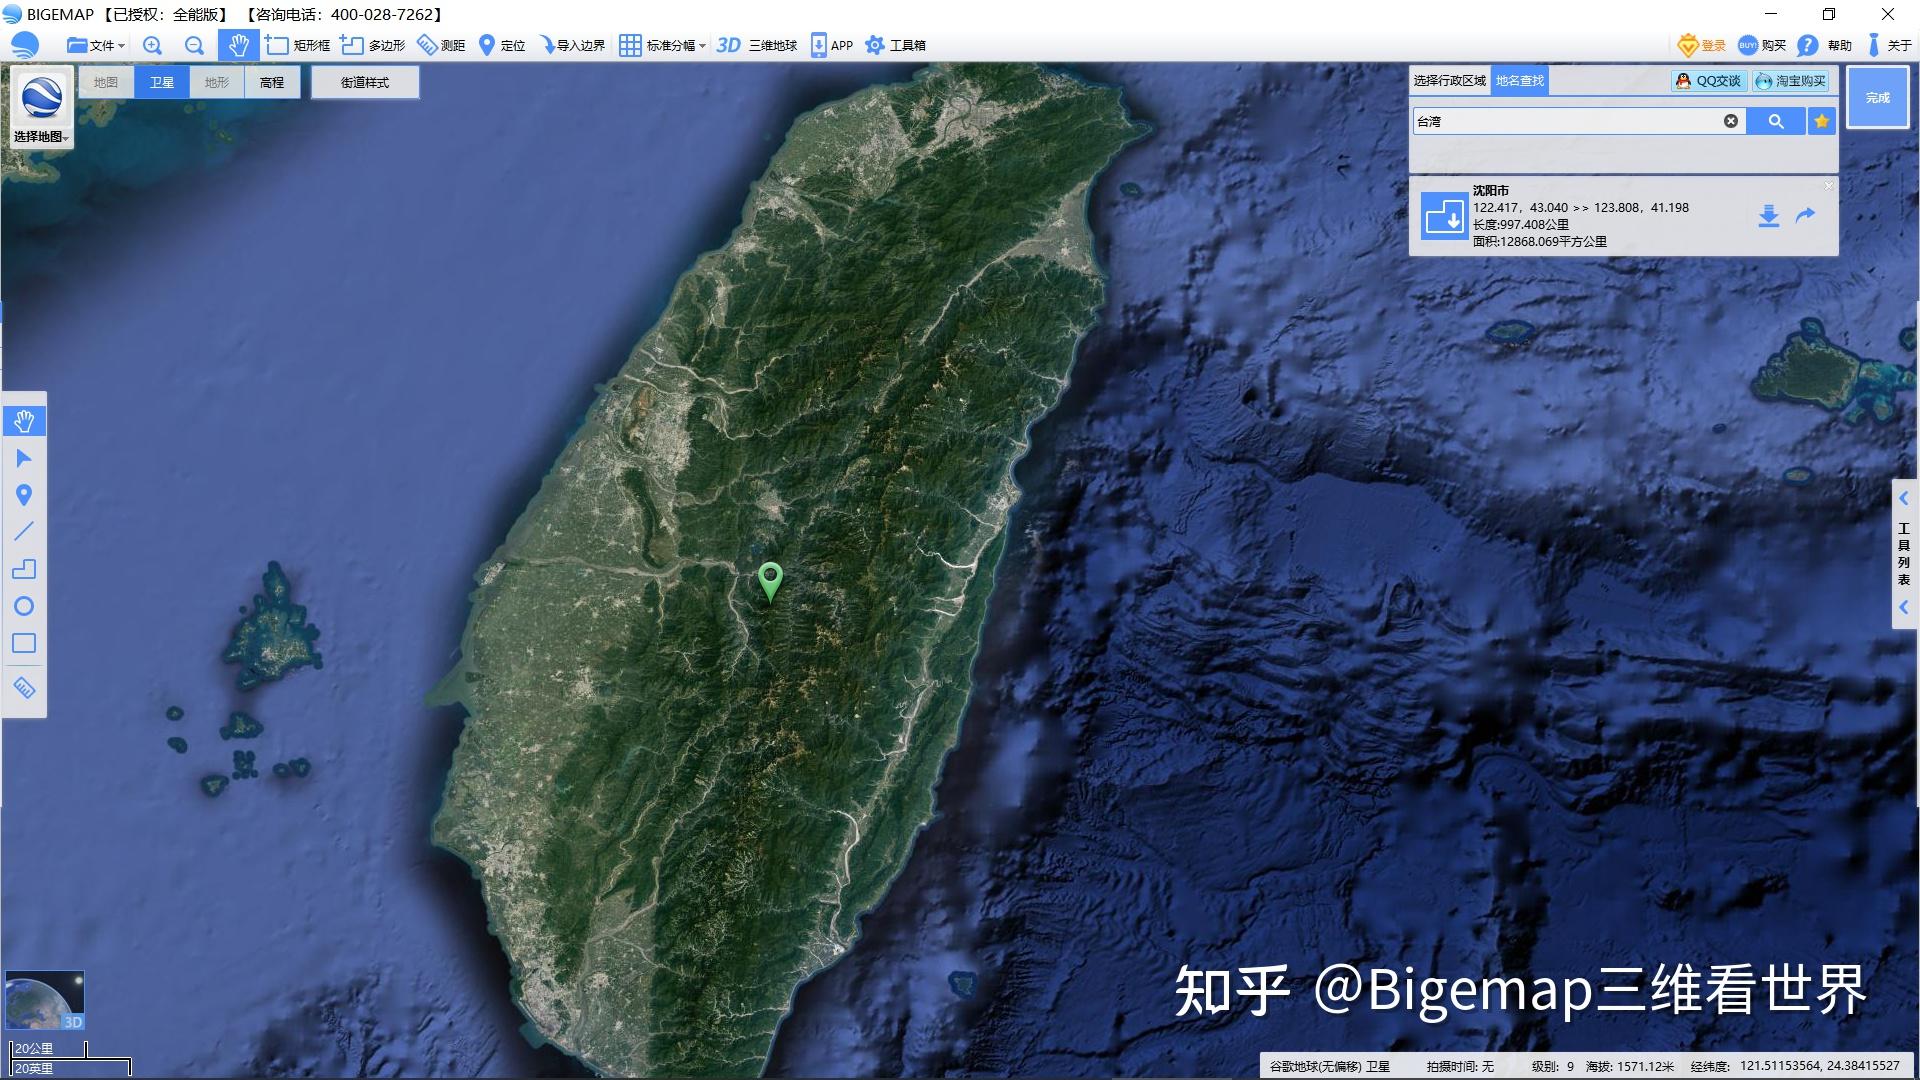 台湾东部卫星地图(来源:bigemap大地图)三,为什么"天府之国"会不断